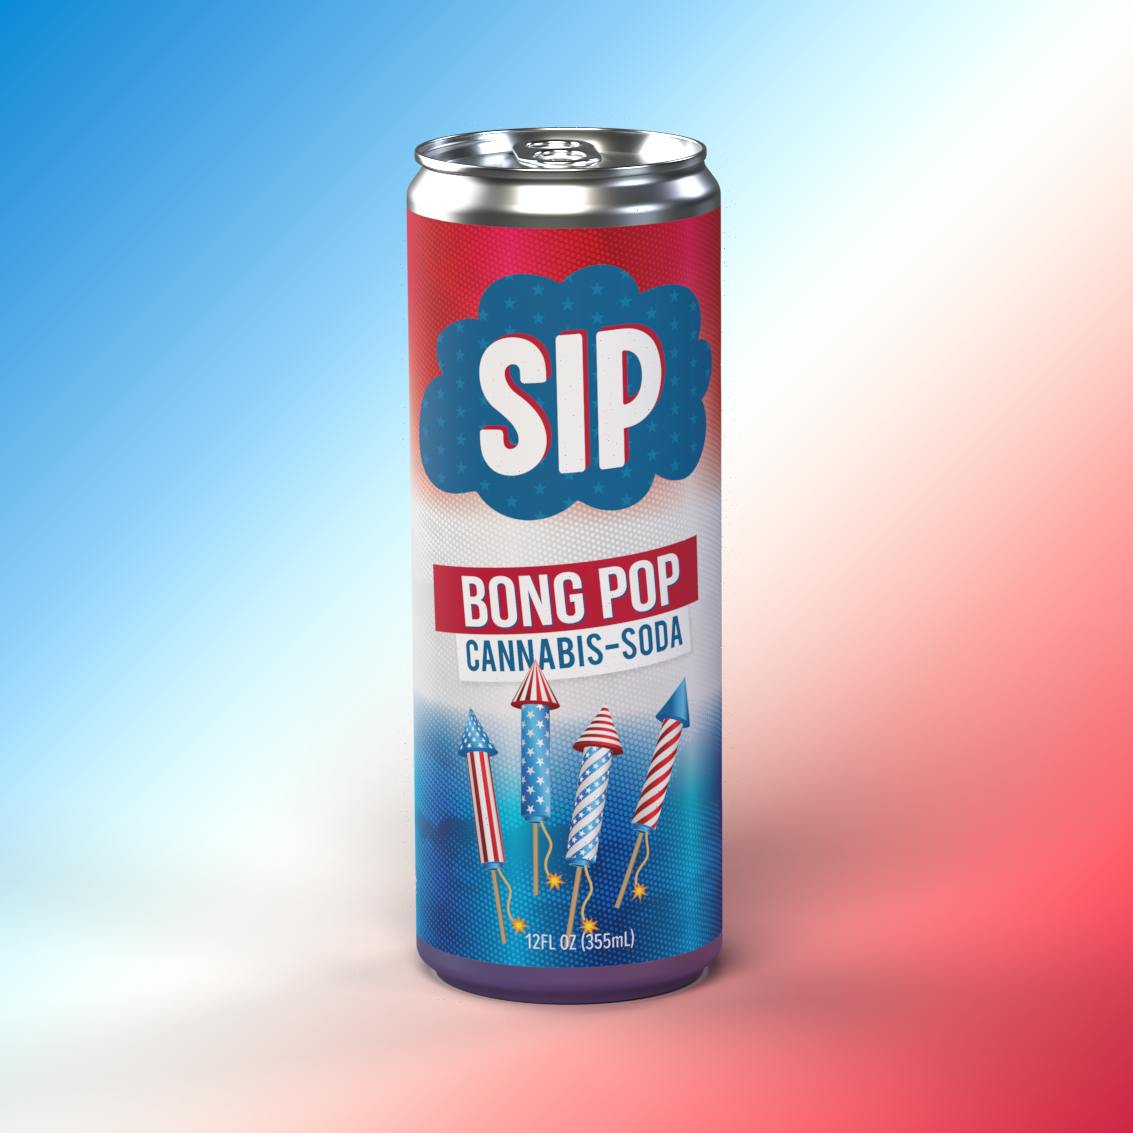 SIP Bong Pop 5mg